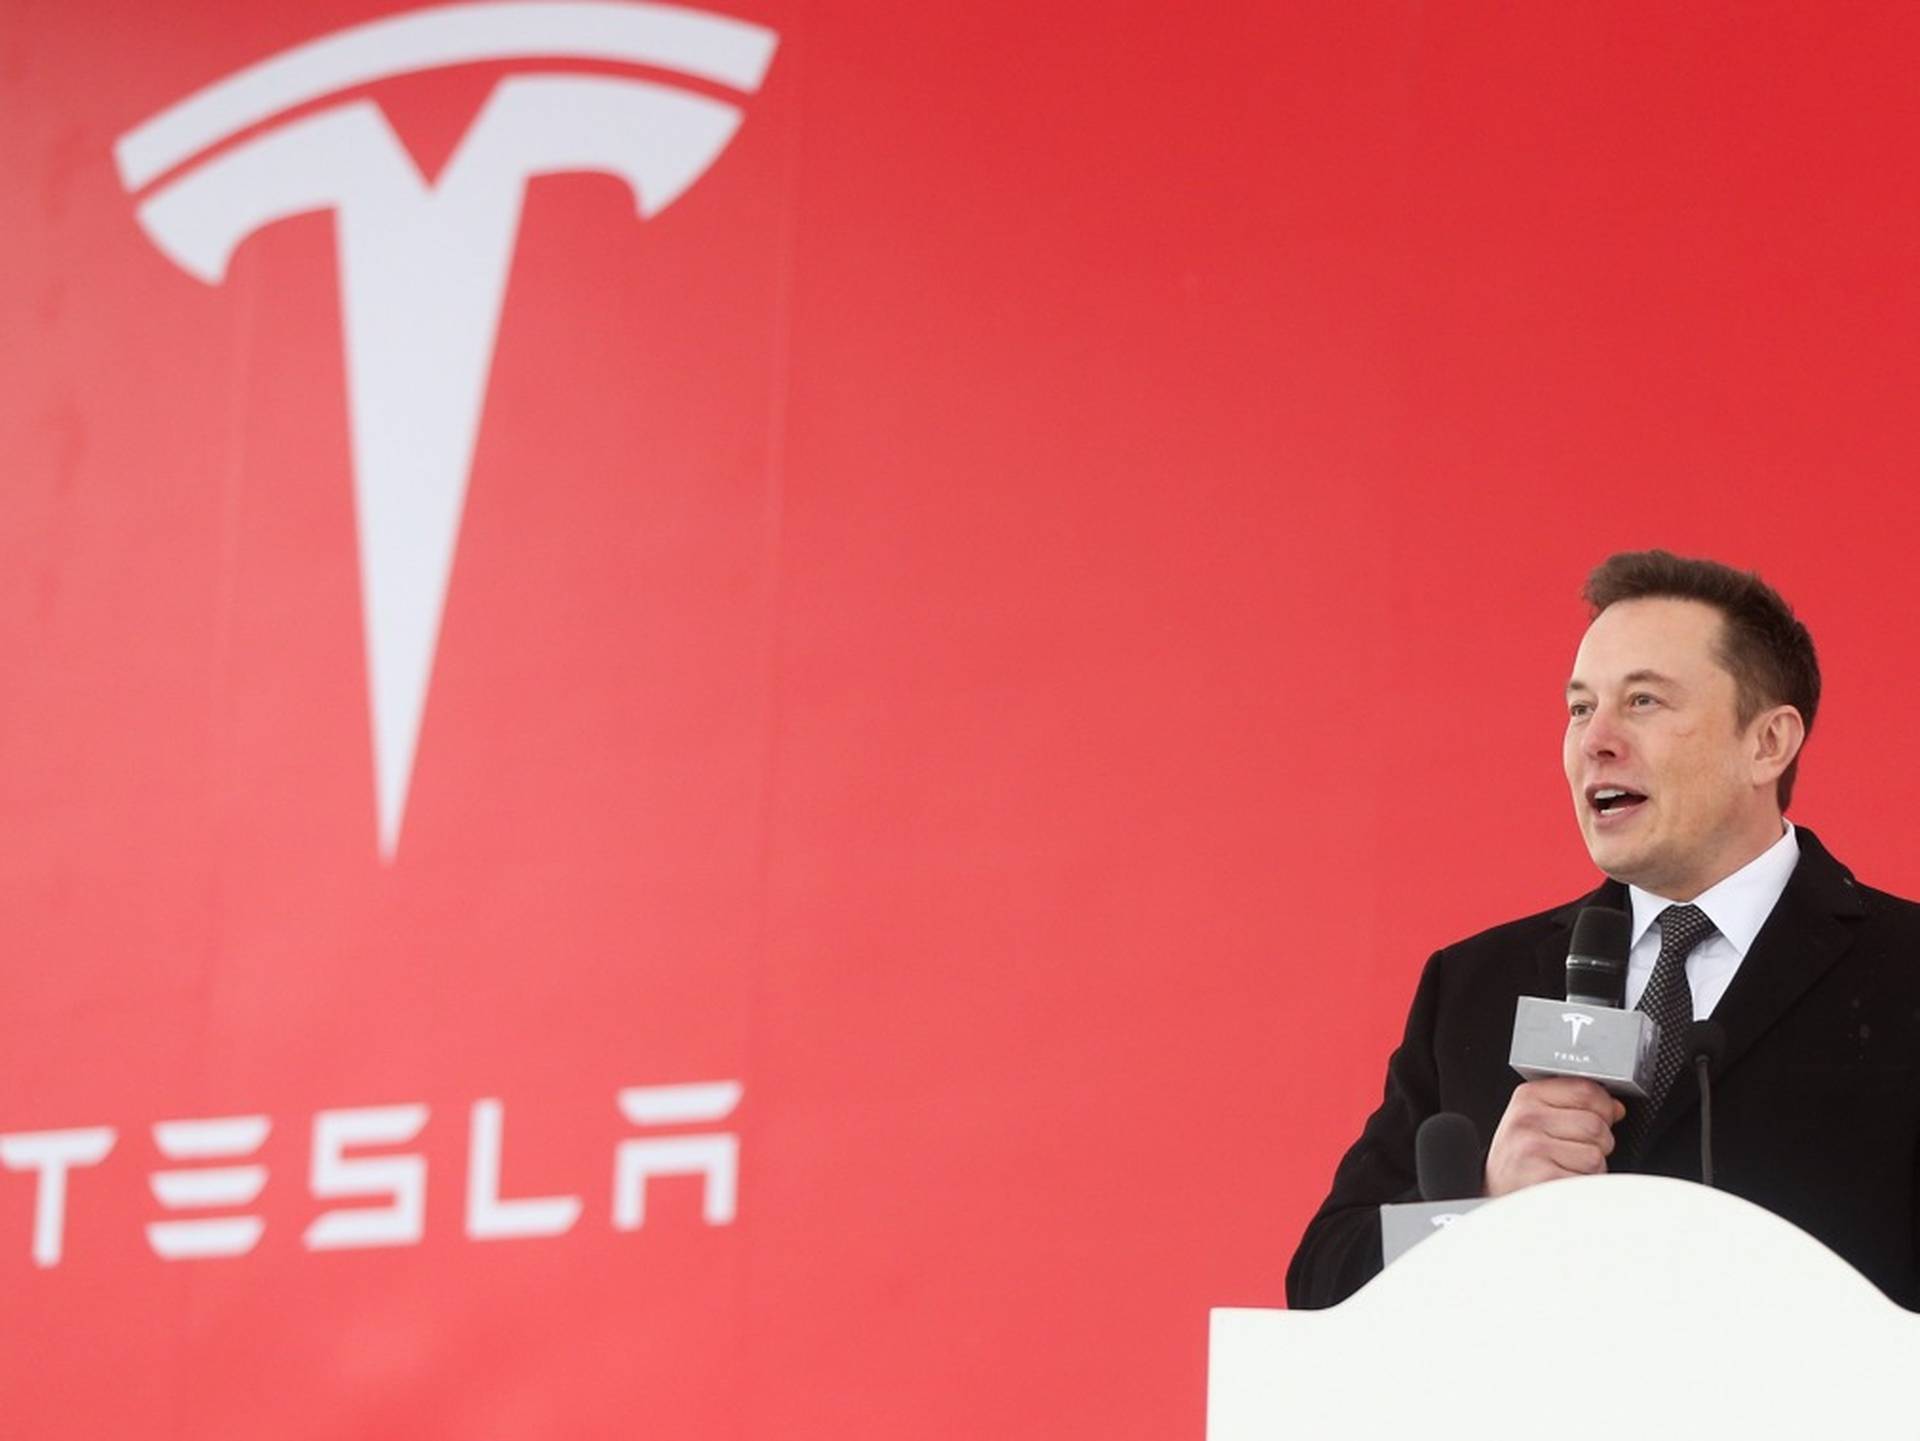 馬斯克稱Tesla將向其他電動汽車開放充電網絡